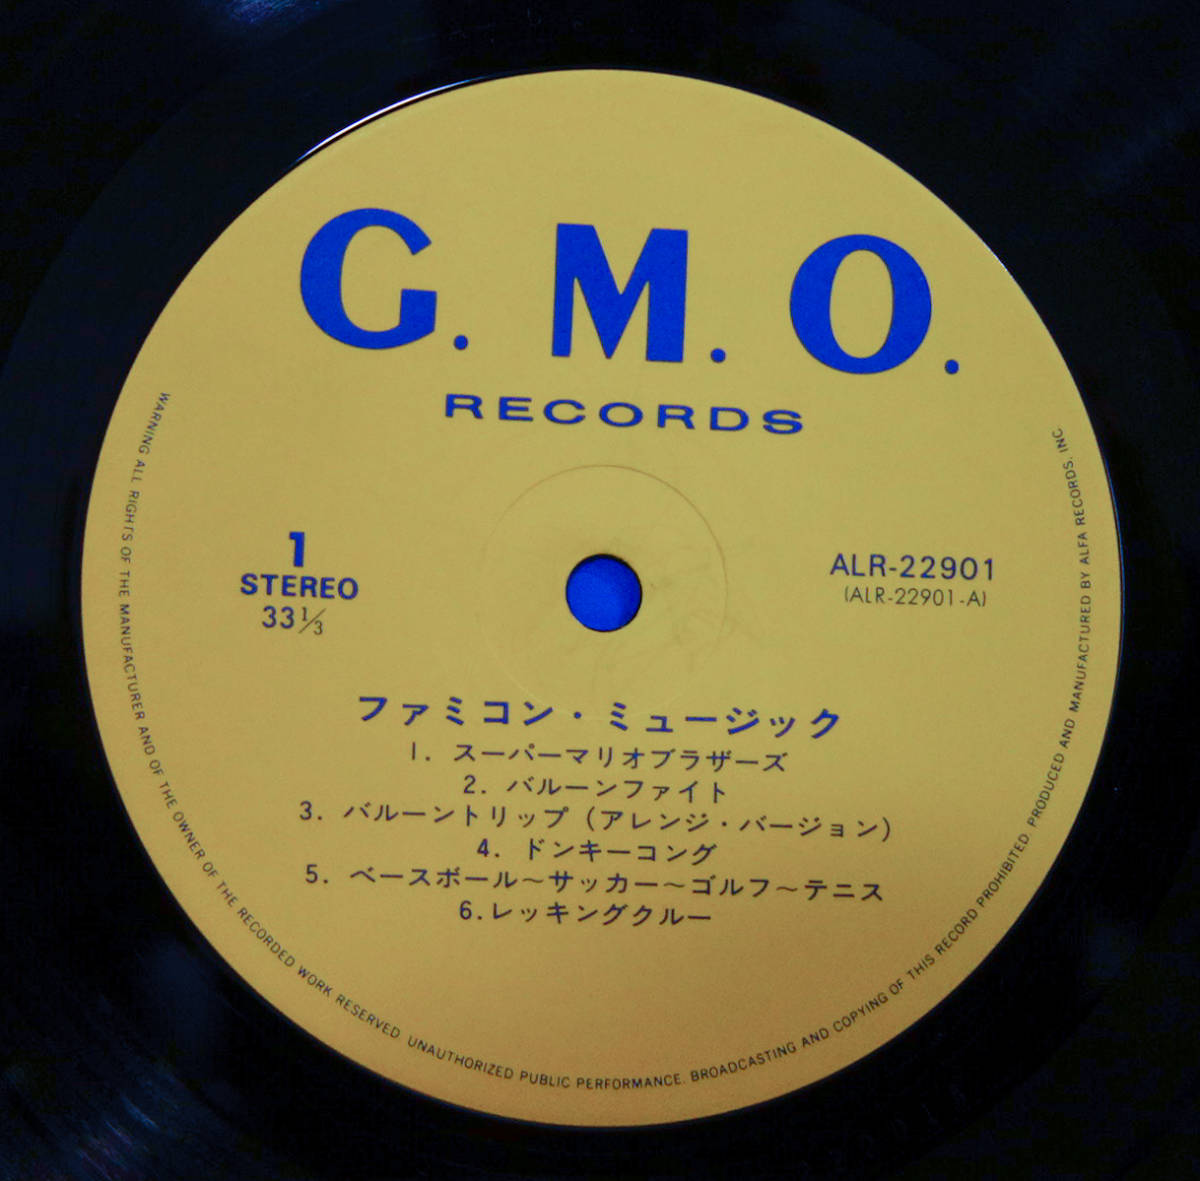 ファミコン・ミュージック Famicom Music /LP(帯付・楽譜付)/ G.M.O. - ALR-22901, Alfa - ALR-22901 / NES / Super Mario Bros._画像4